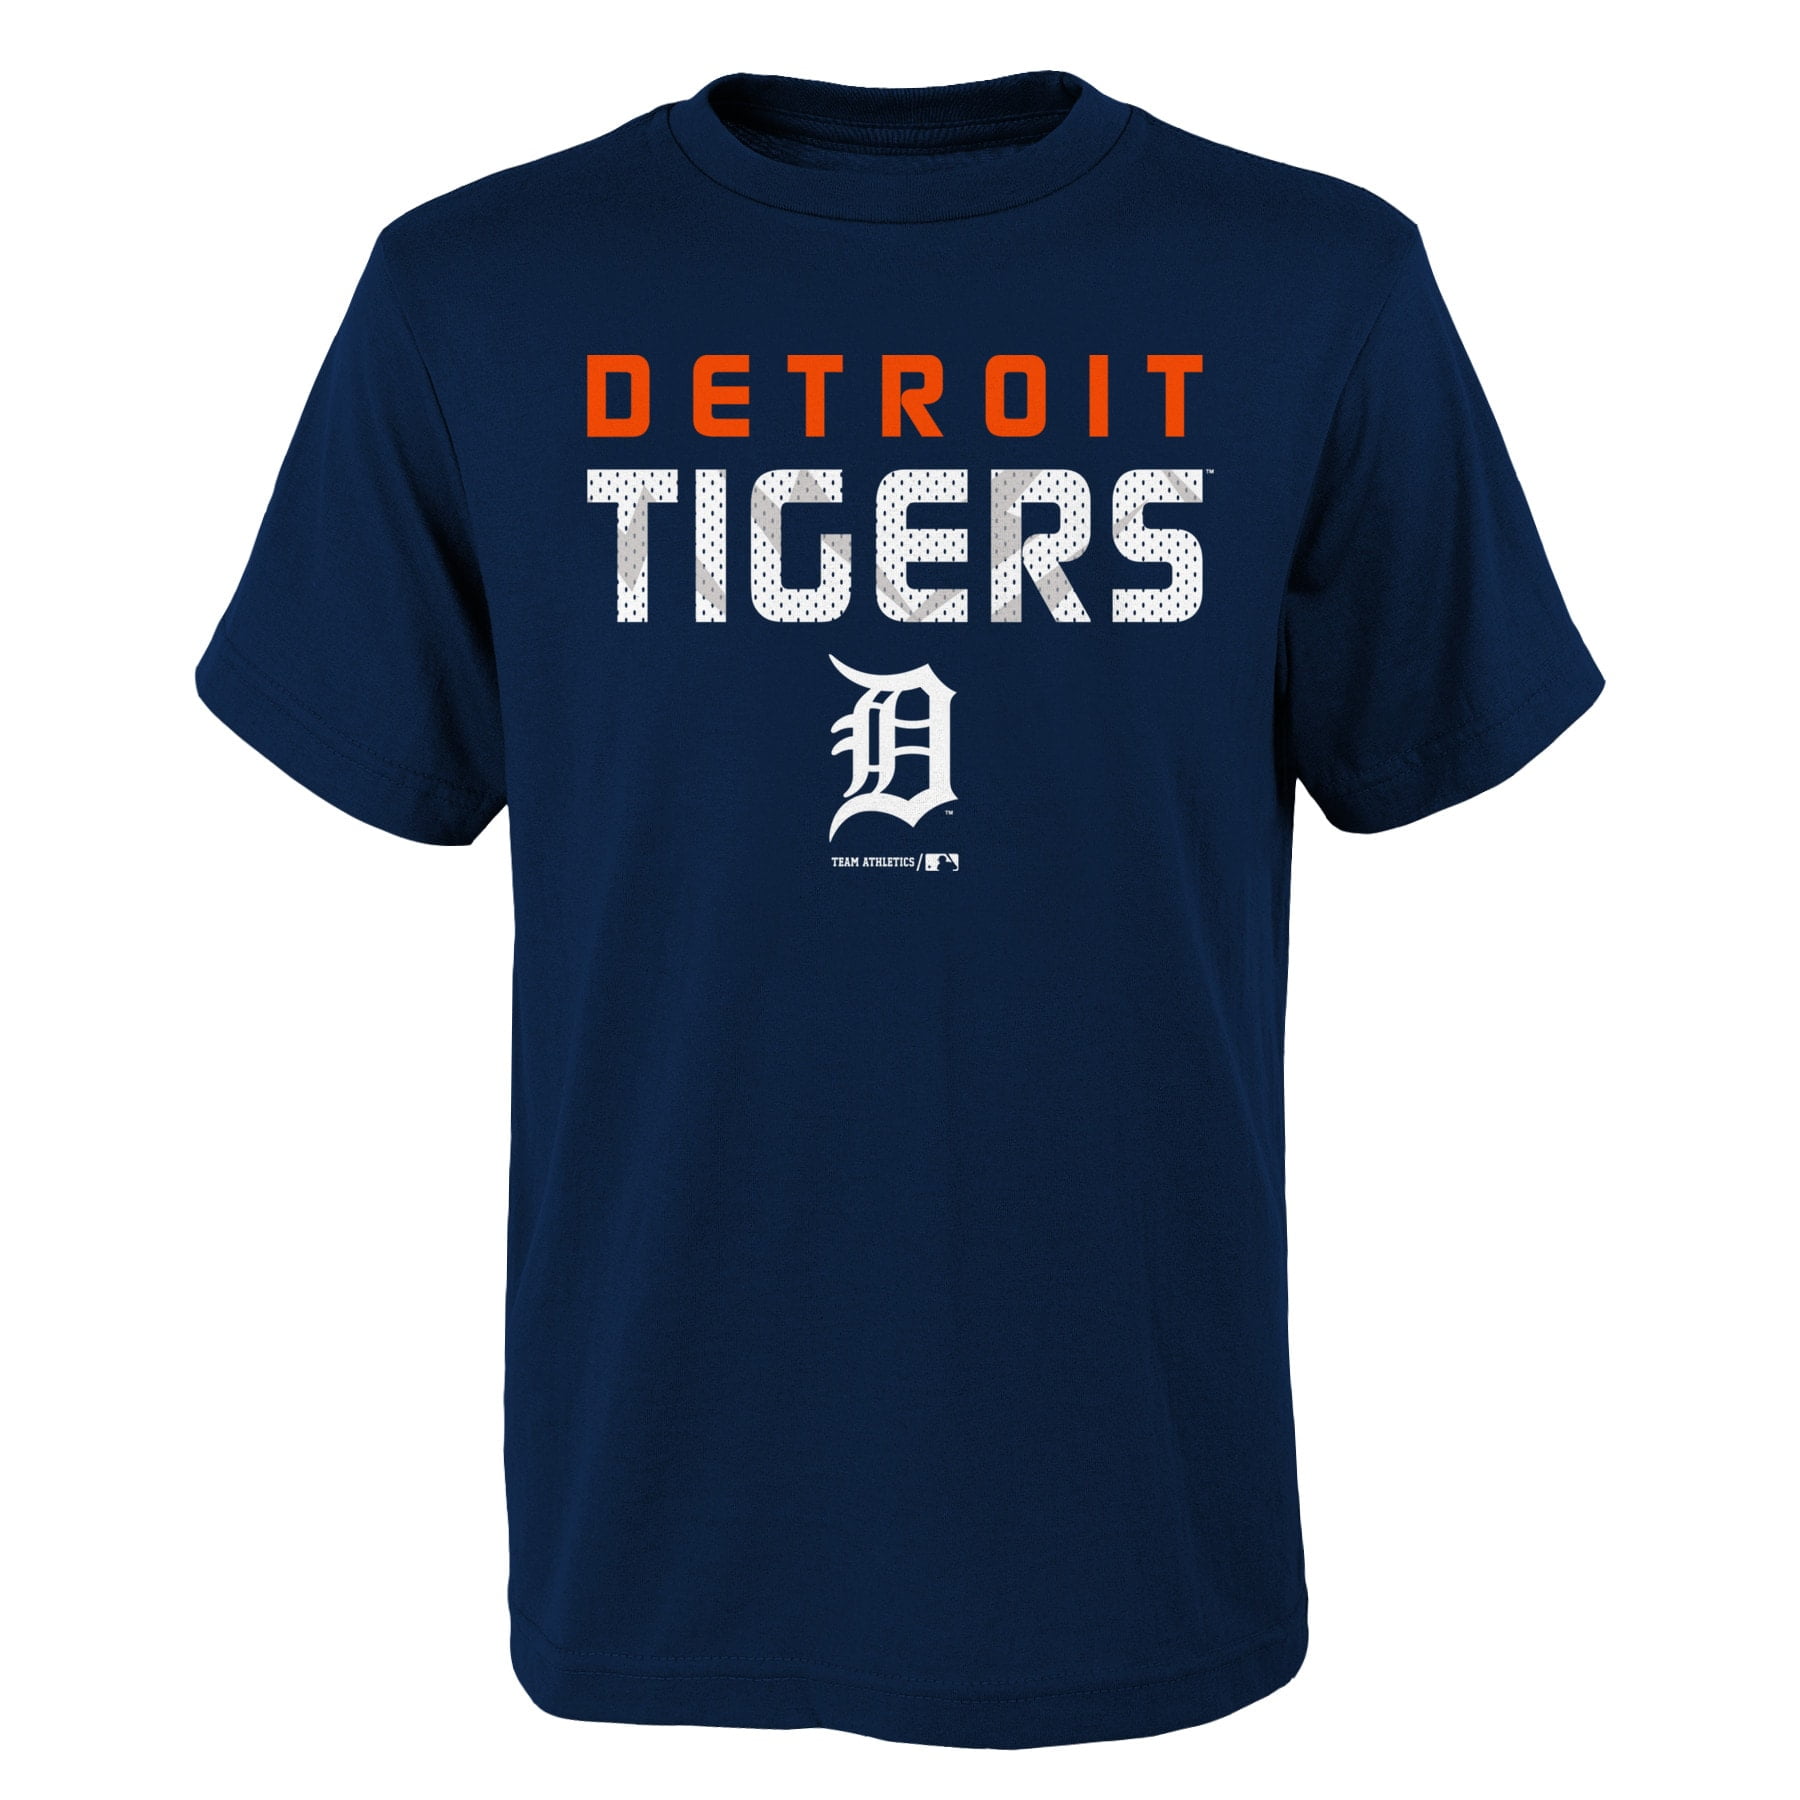 Detroit Tigers Team Shop - Walmart.com